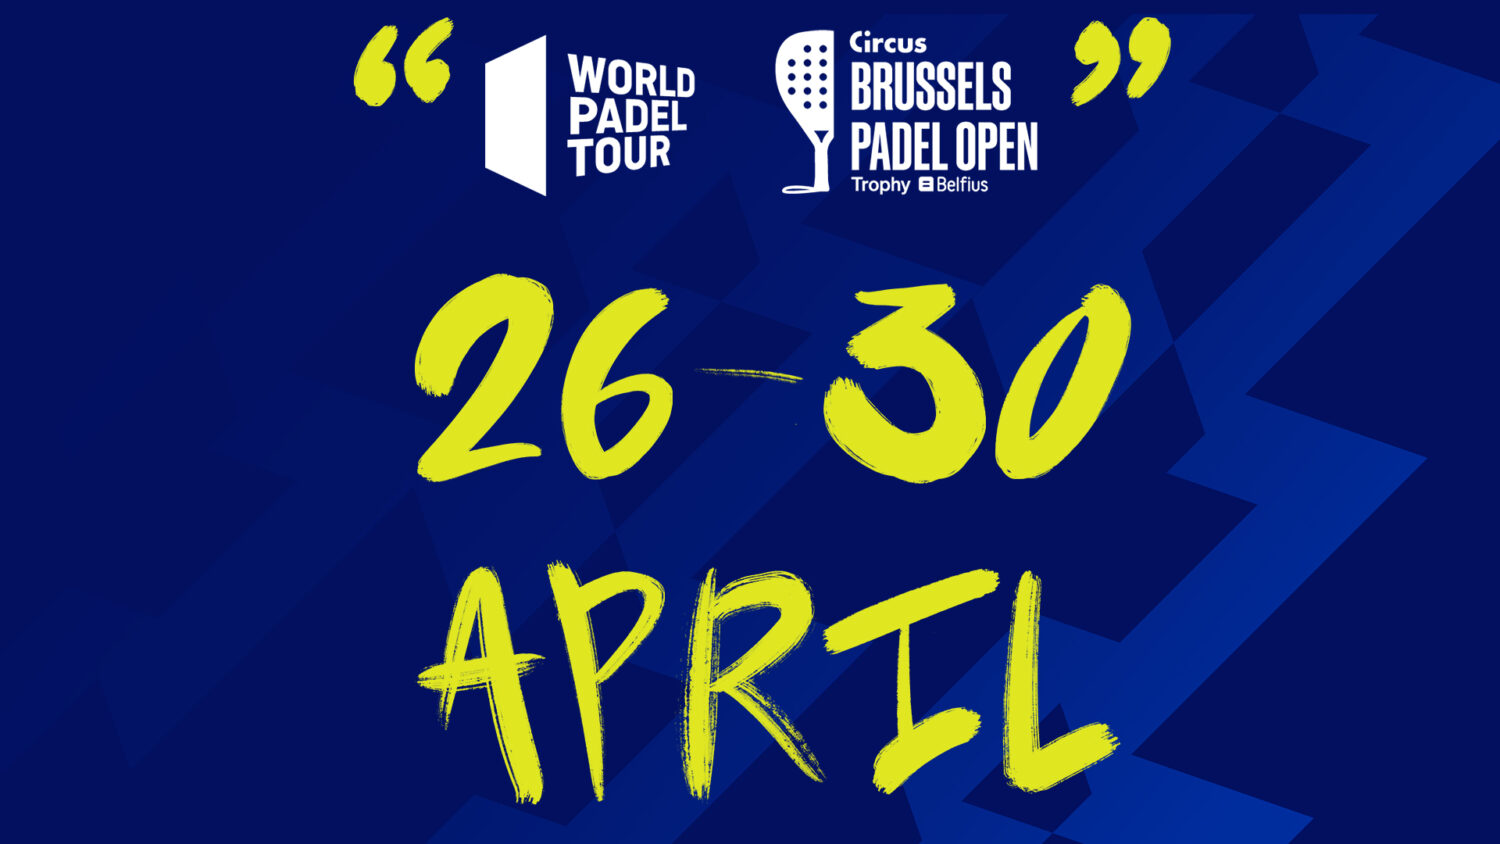 Brussels Padel Open WPT - Kromveld